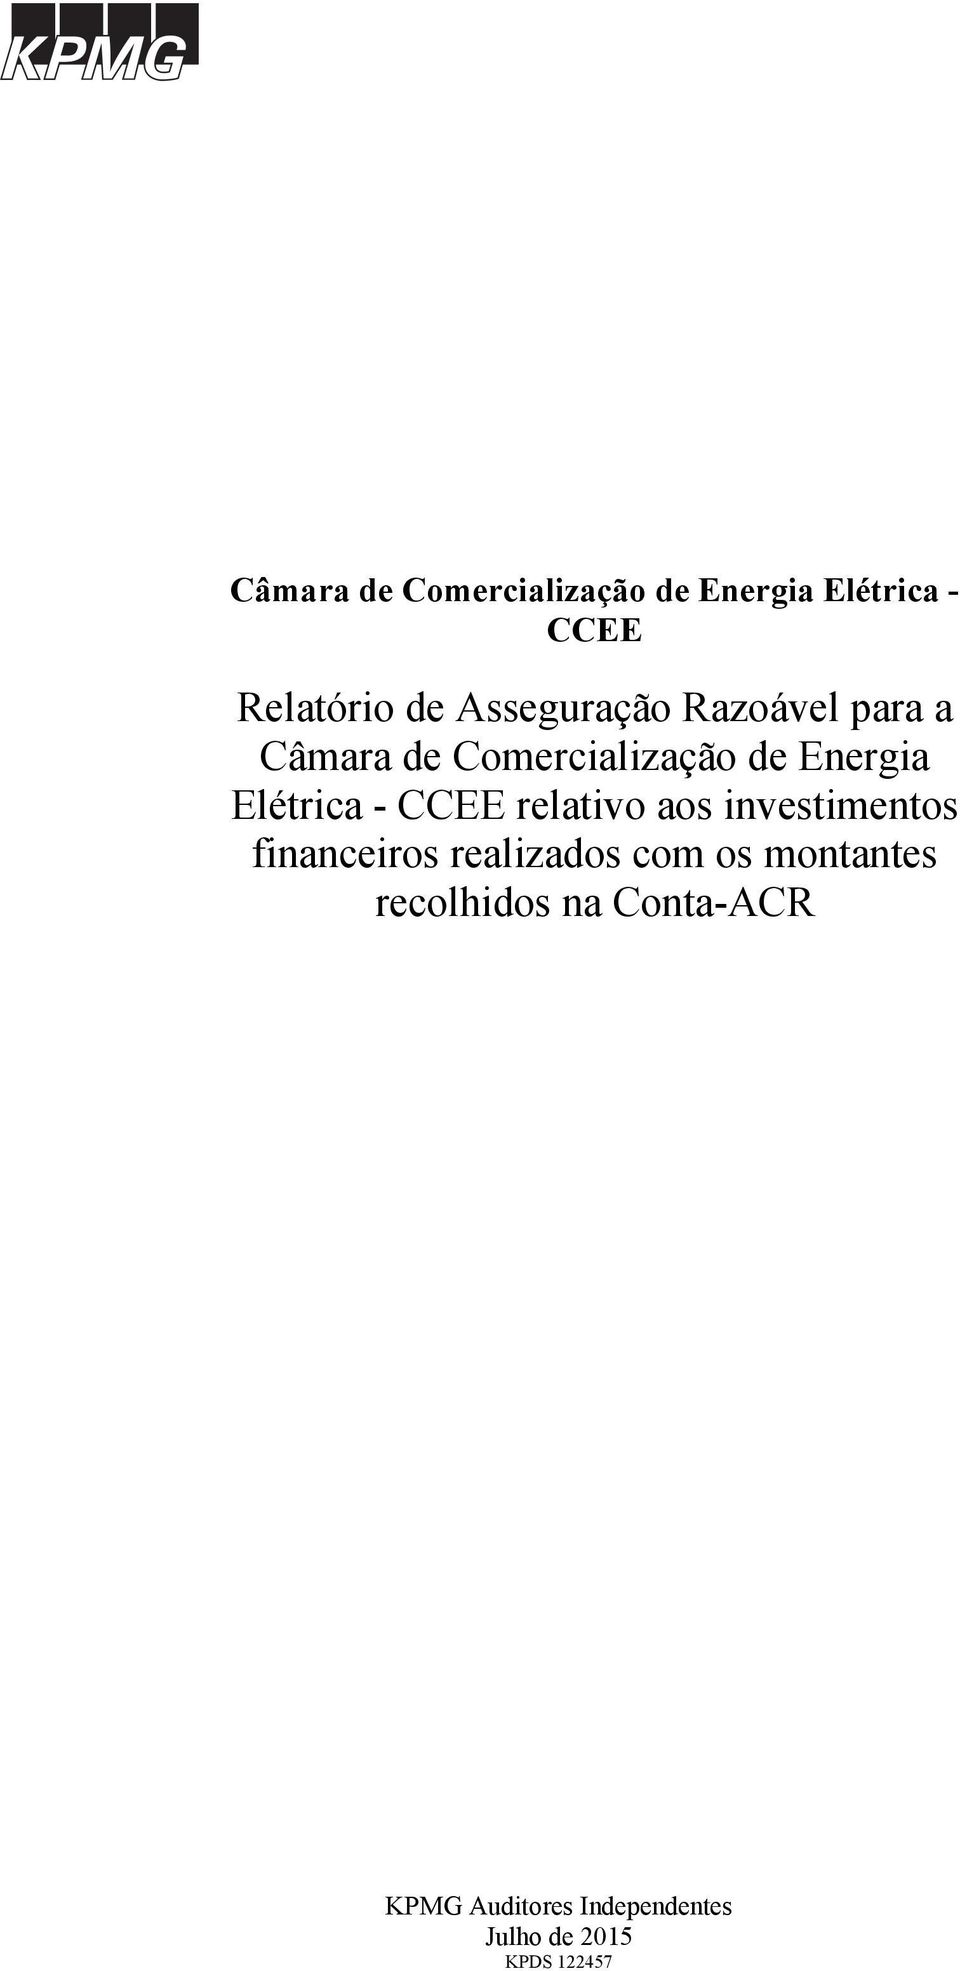 Elétrica - CCEE relativo aos investimentos financeiros realizados com os